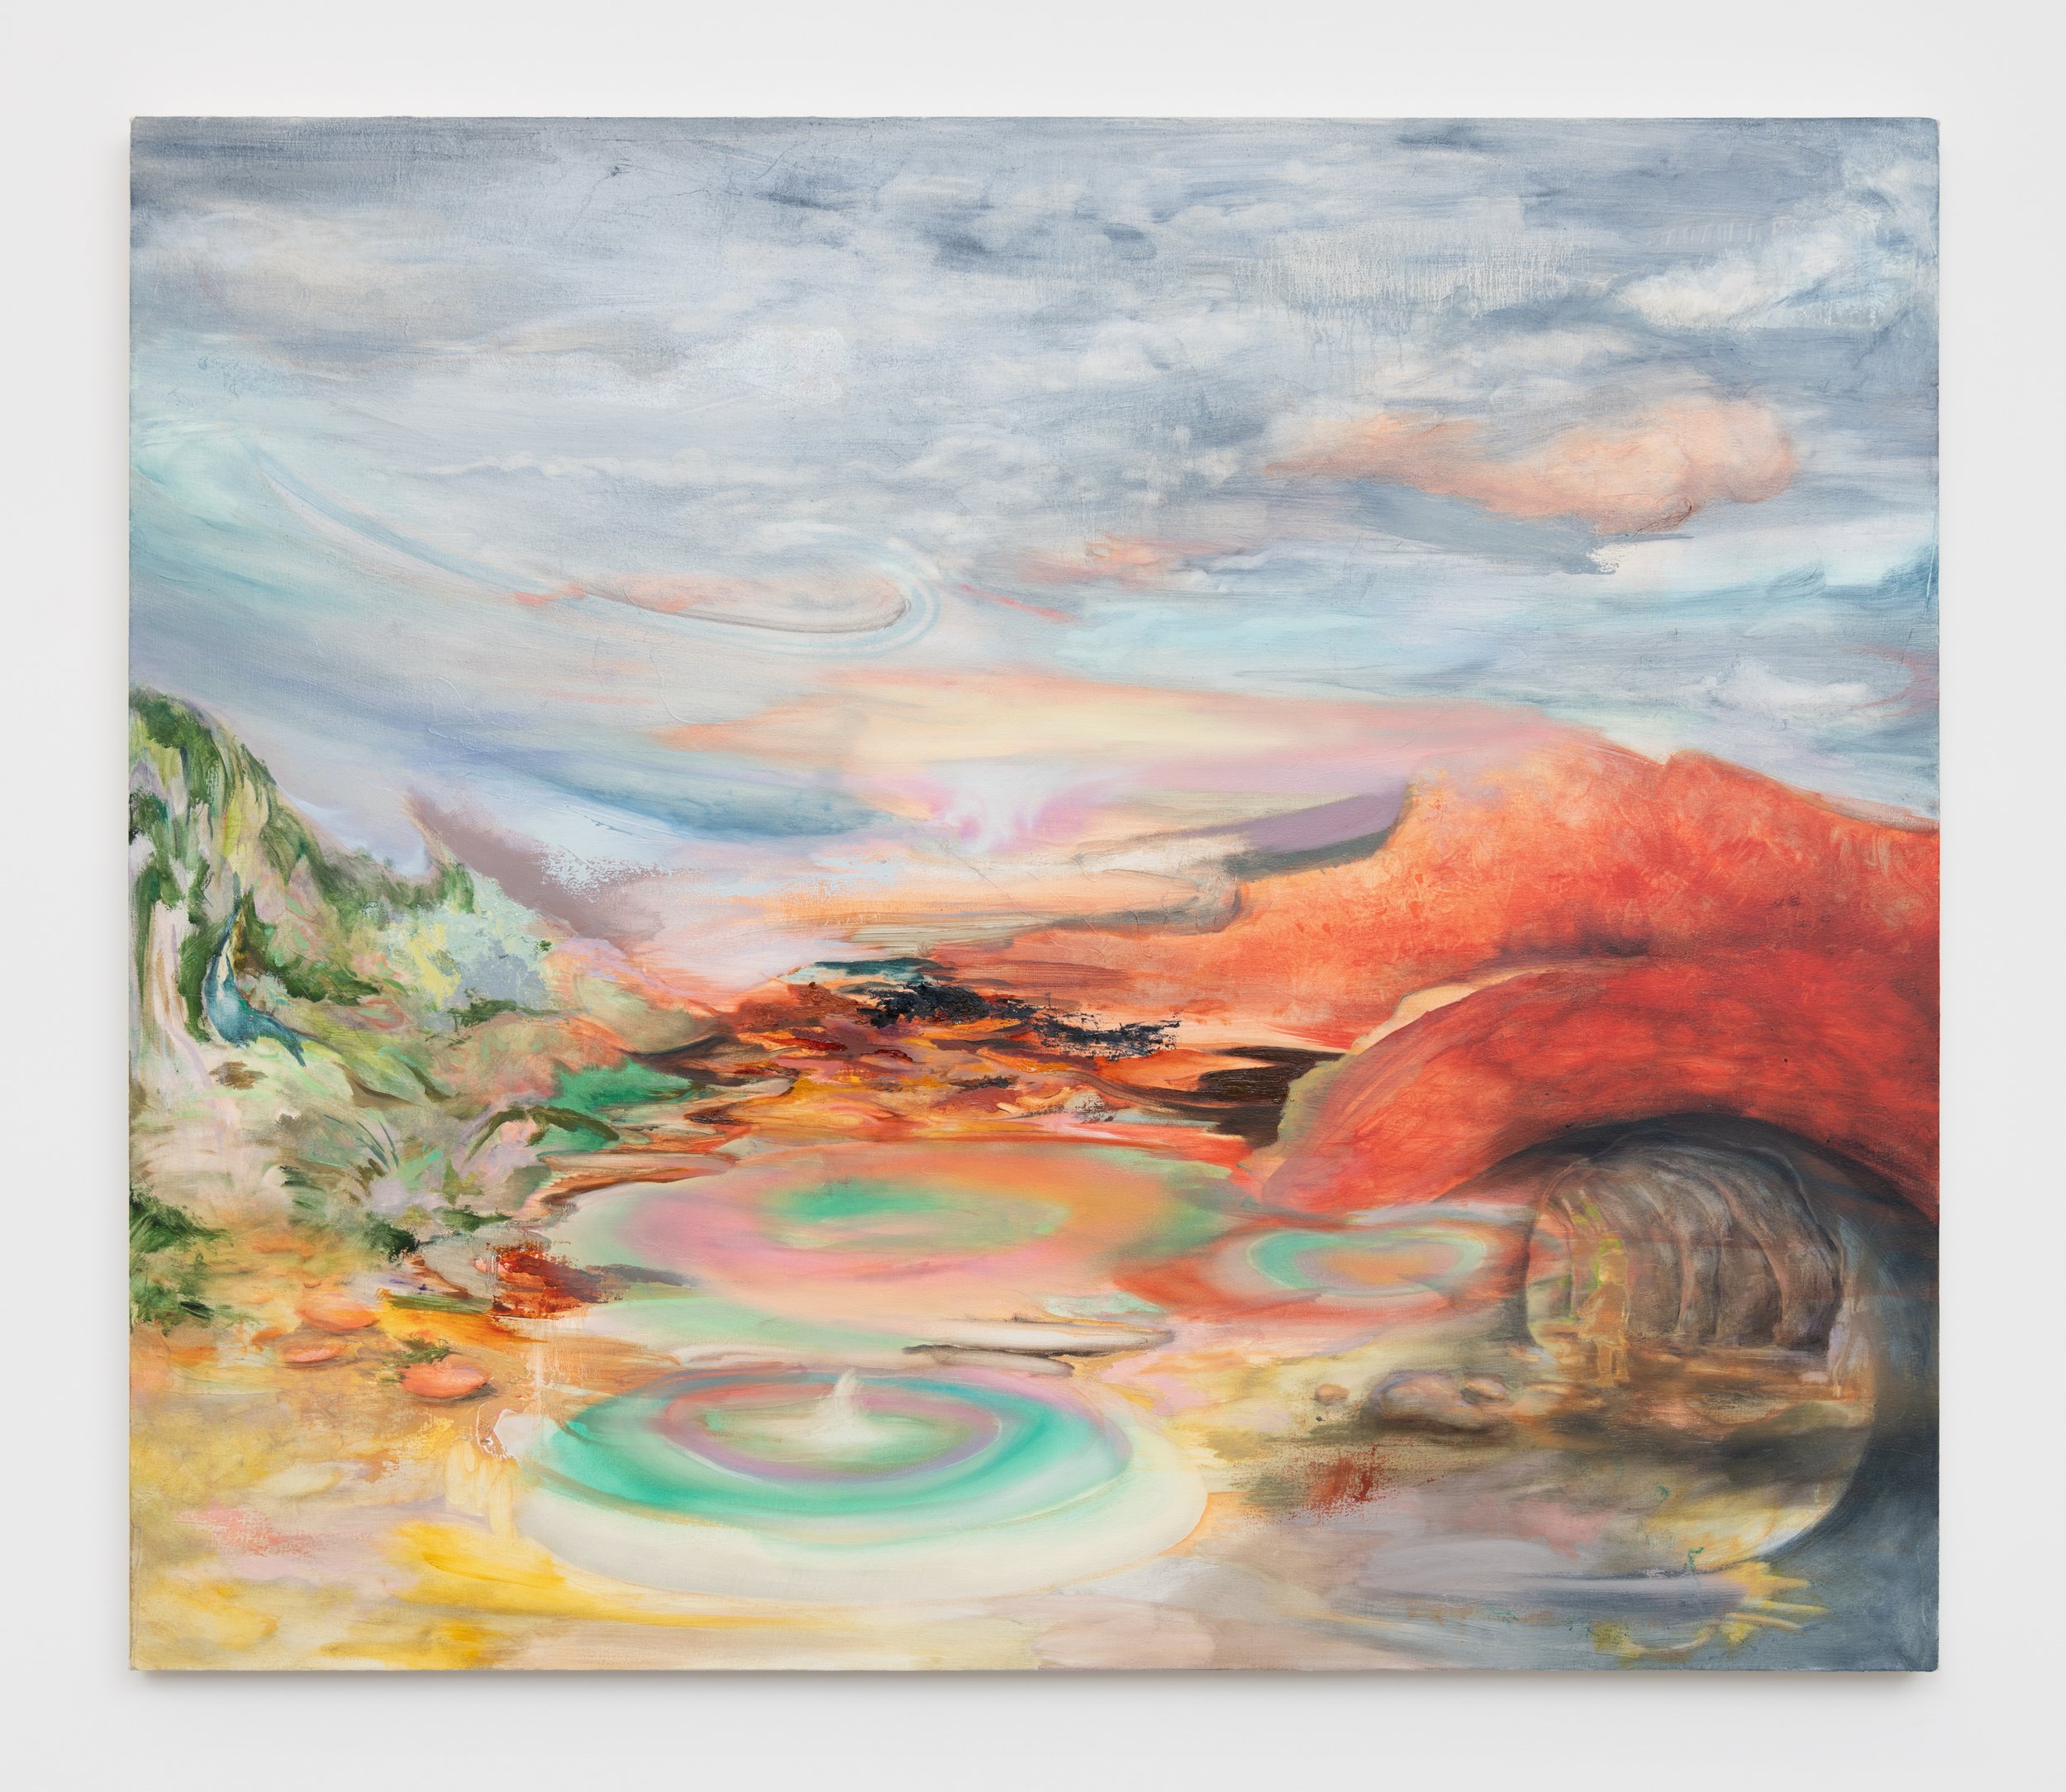   Arcadia   42” x 49”  Oil on canvas 